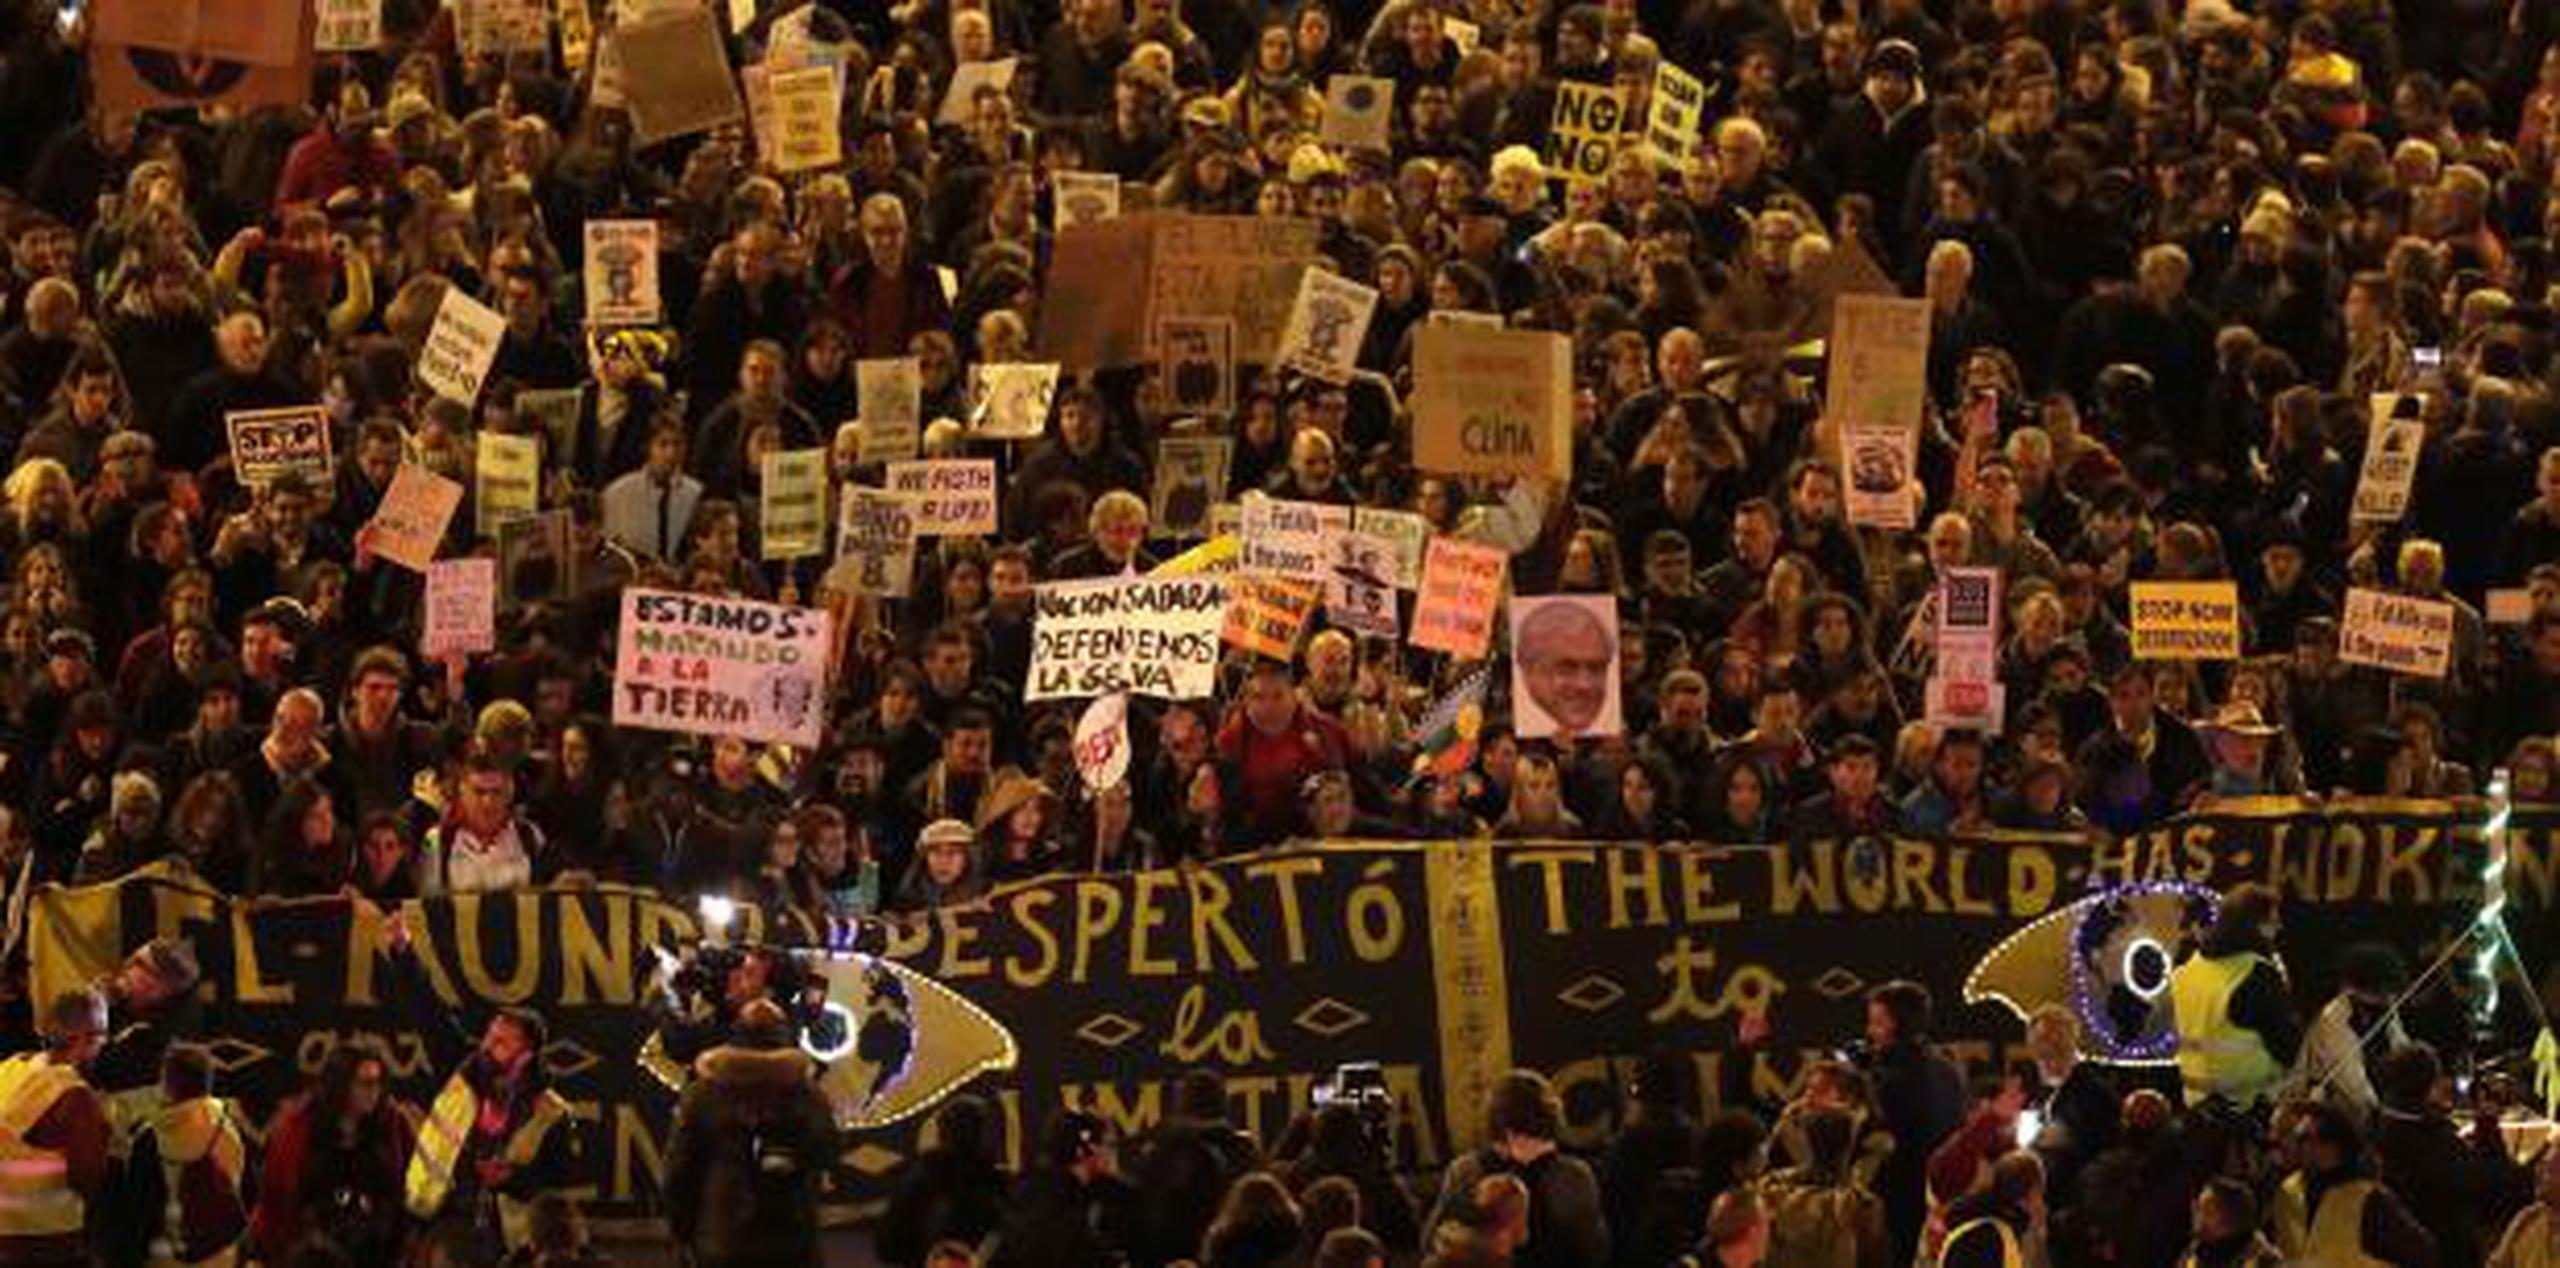 Una manifestación en la que destaca la frase "el mundo despertó", celebrada el viernes en Madrid sede de la cumbre de cambio climático. (AP)